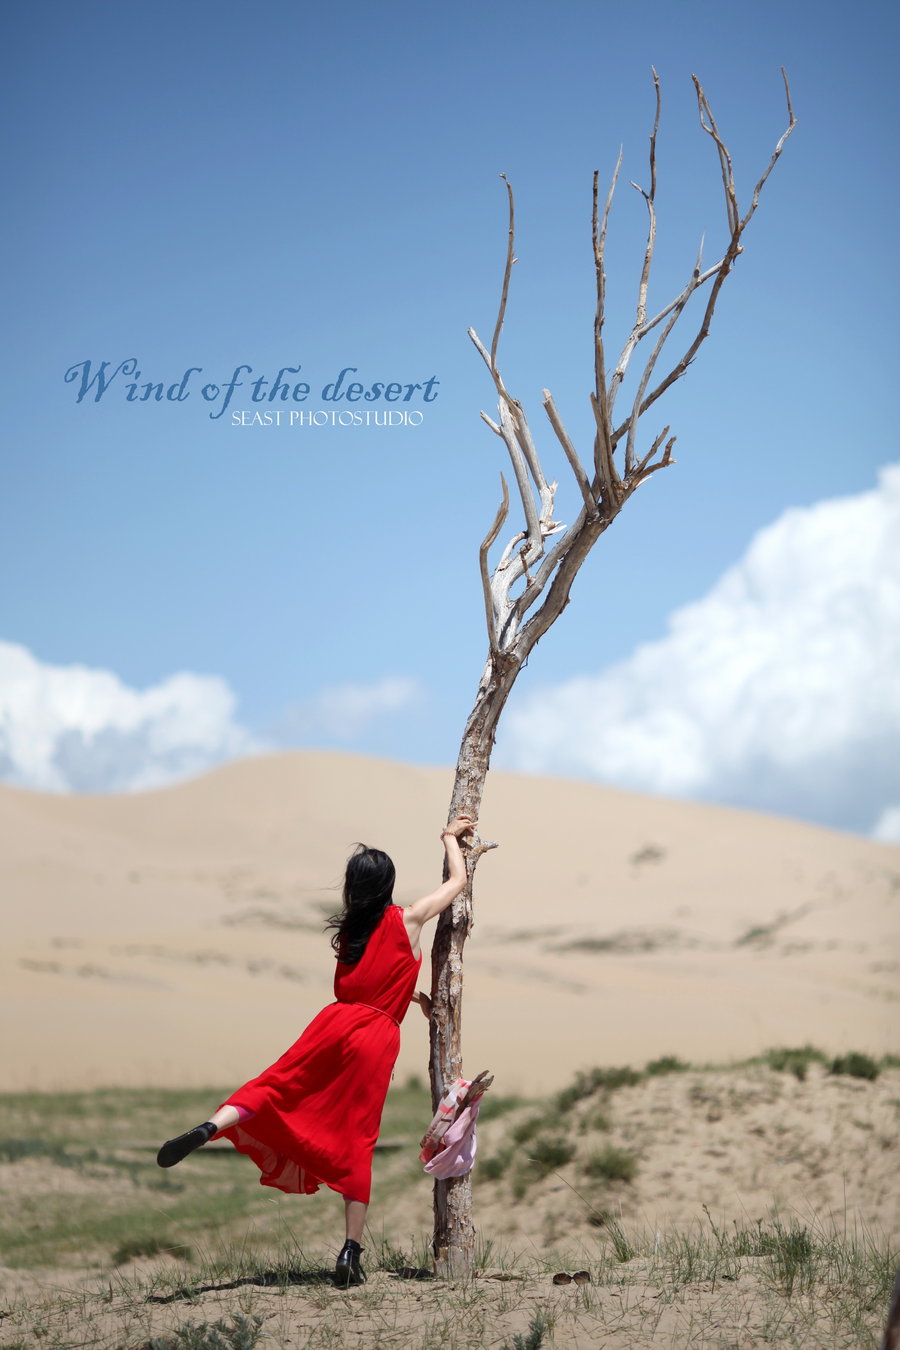 Wind of the desert